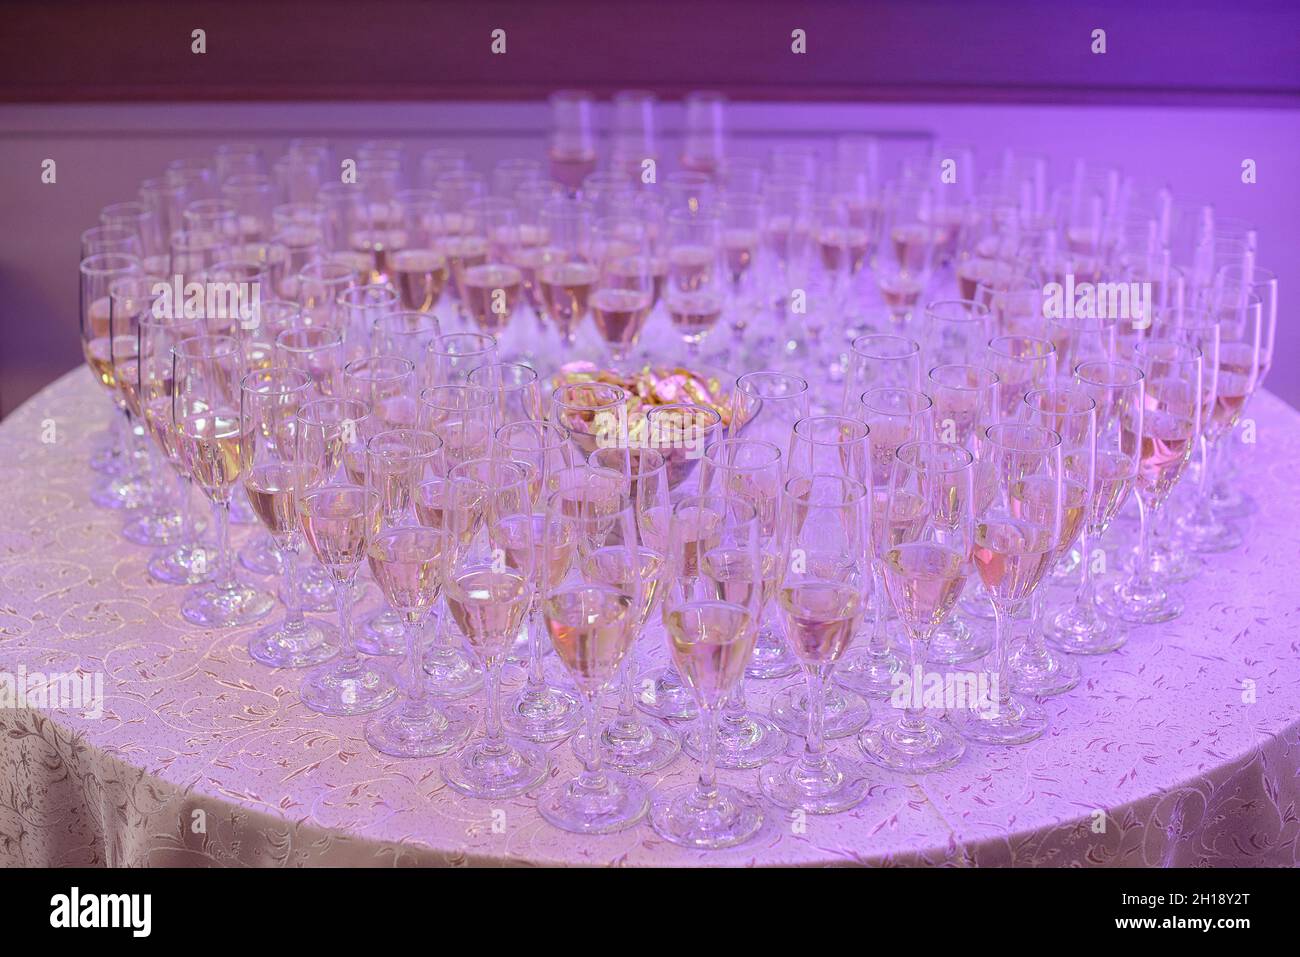 Des verres pleins de champagne ou de champagne formant un coeur, placés sur une table ronde sous une lumière violette fluo, une réception ou une fête de mariage typique Banque D'Images